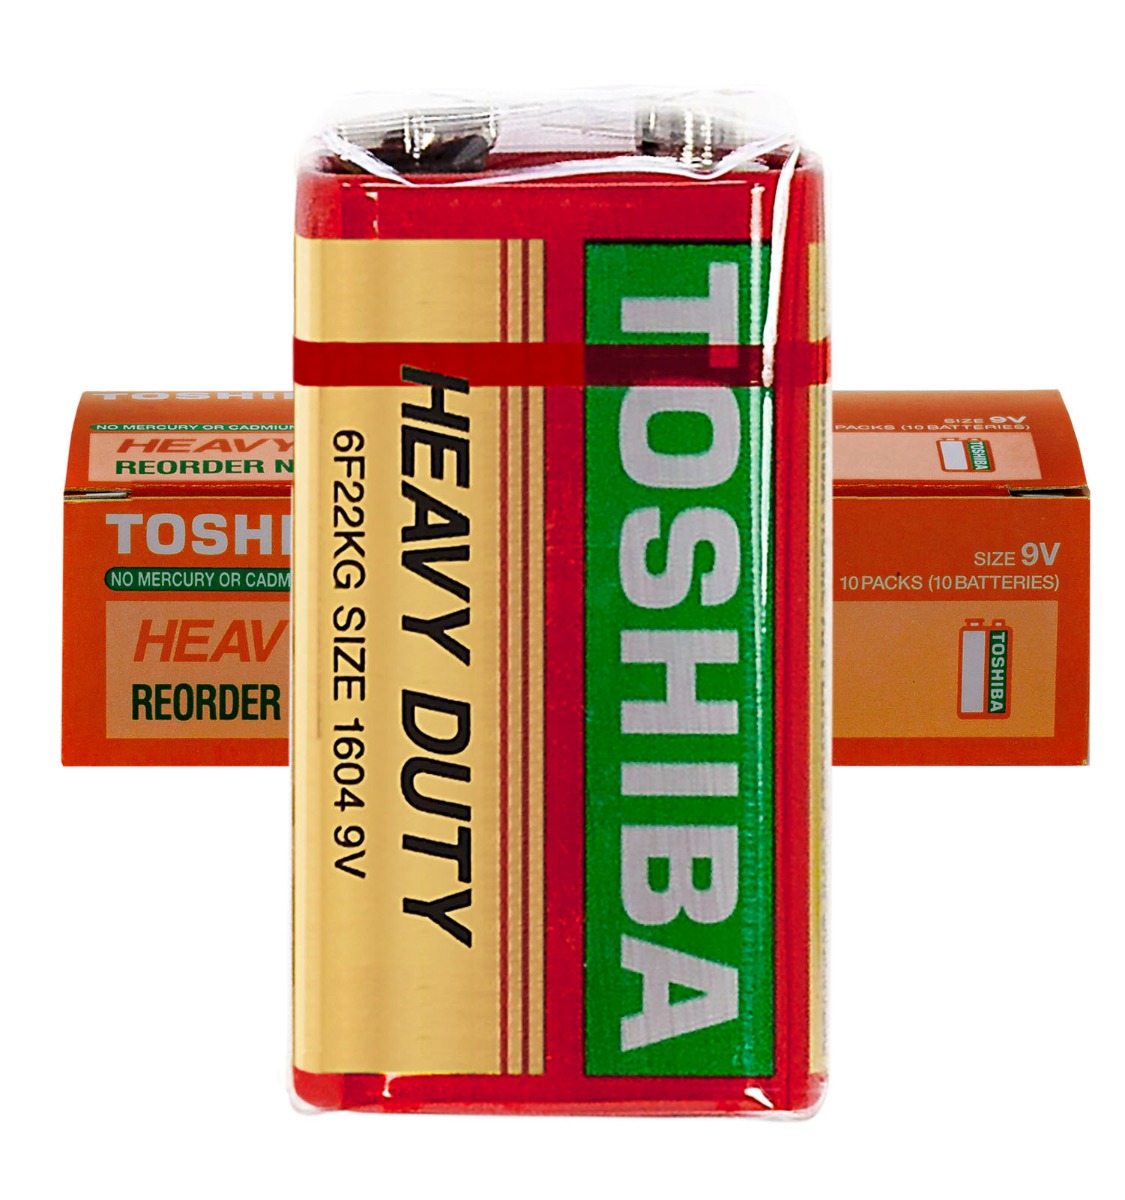 Toshiba 9 V Heavy Duty SP/1, Box of 10 Batteries